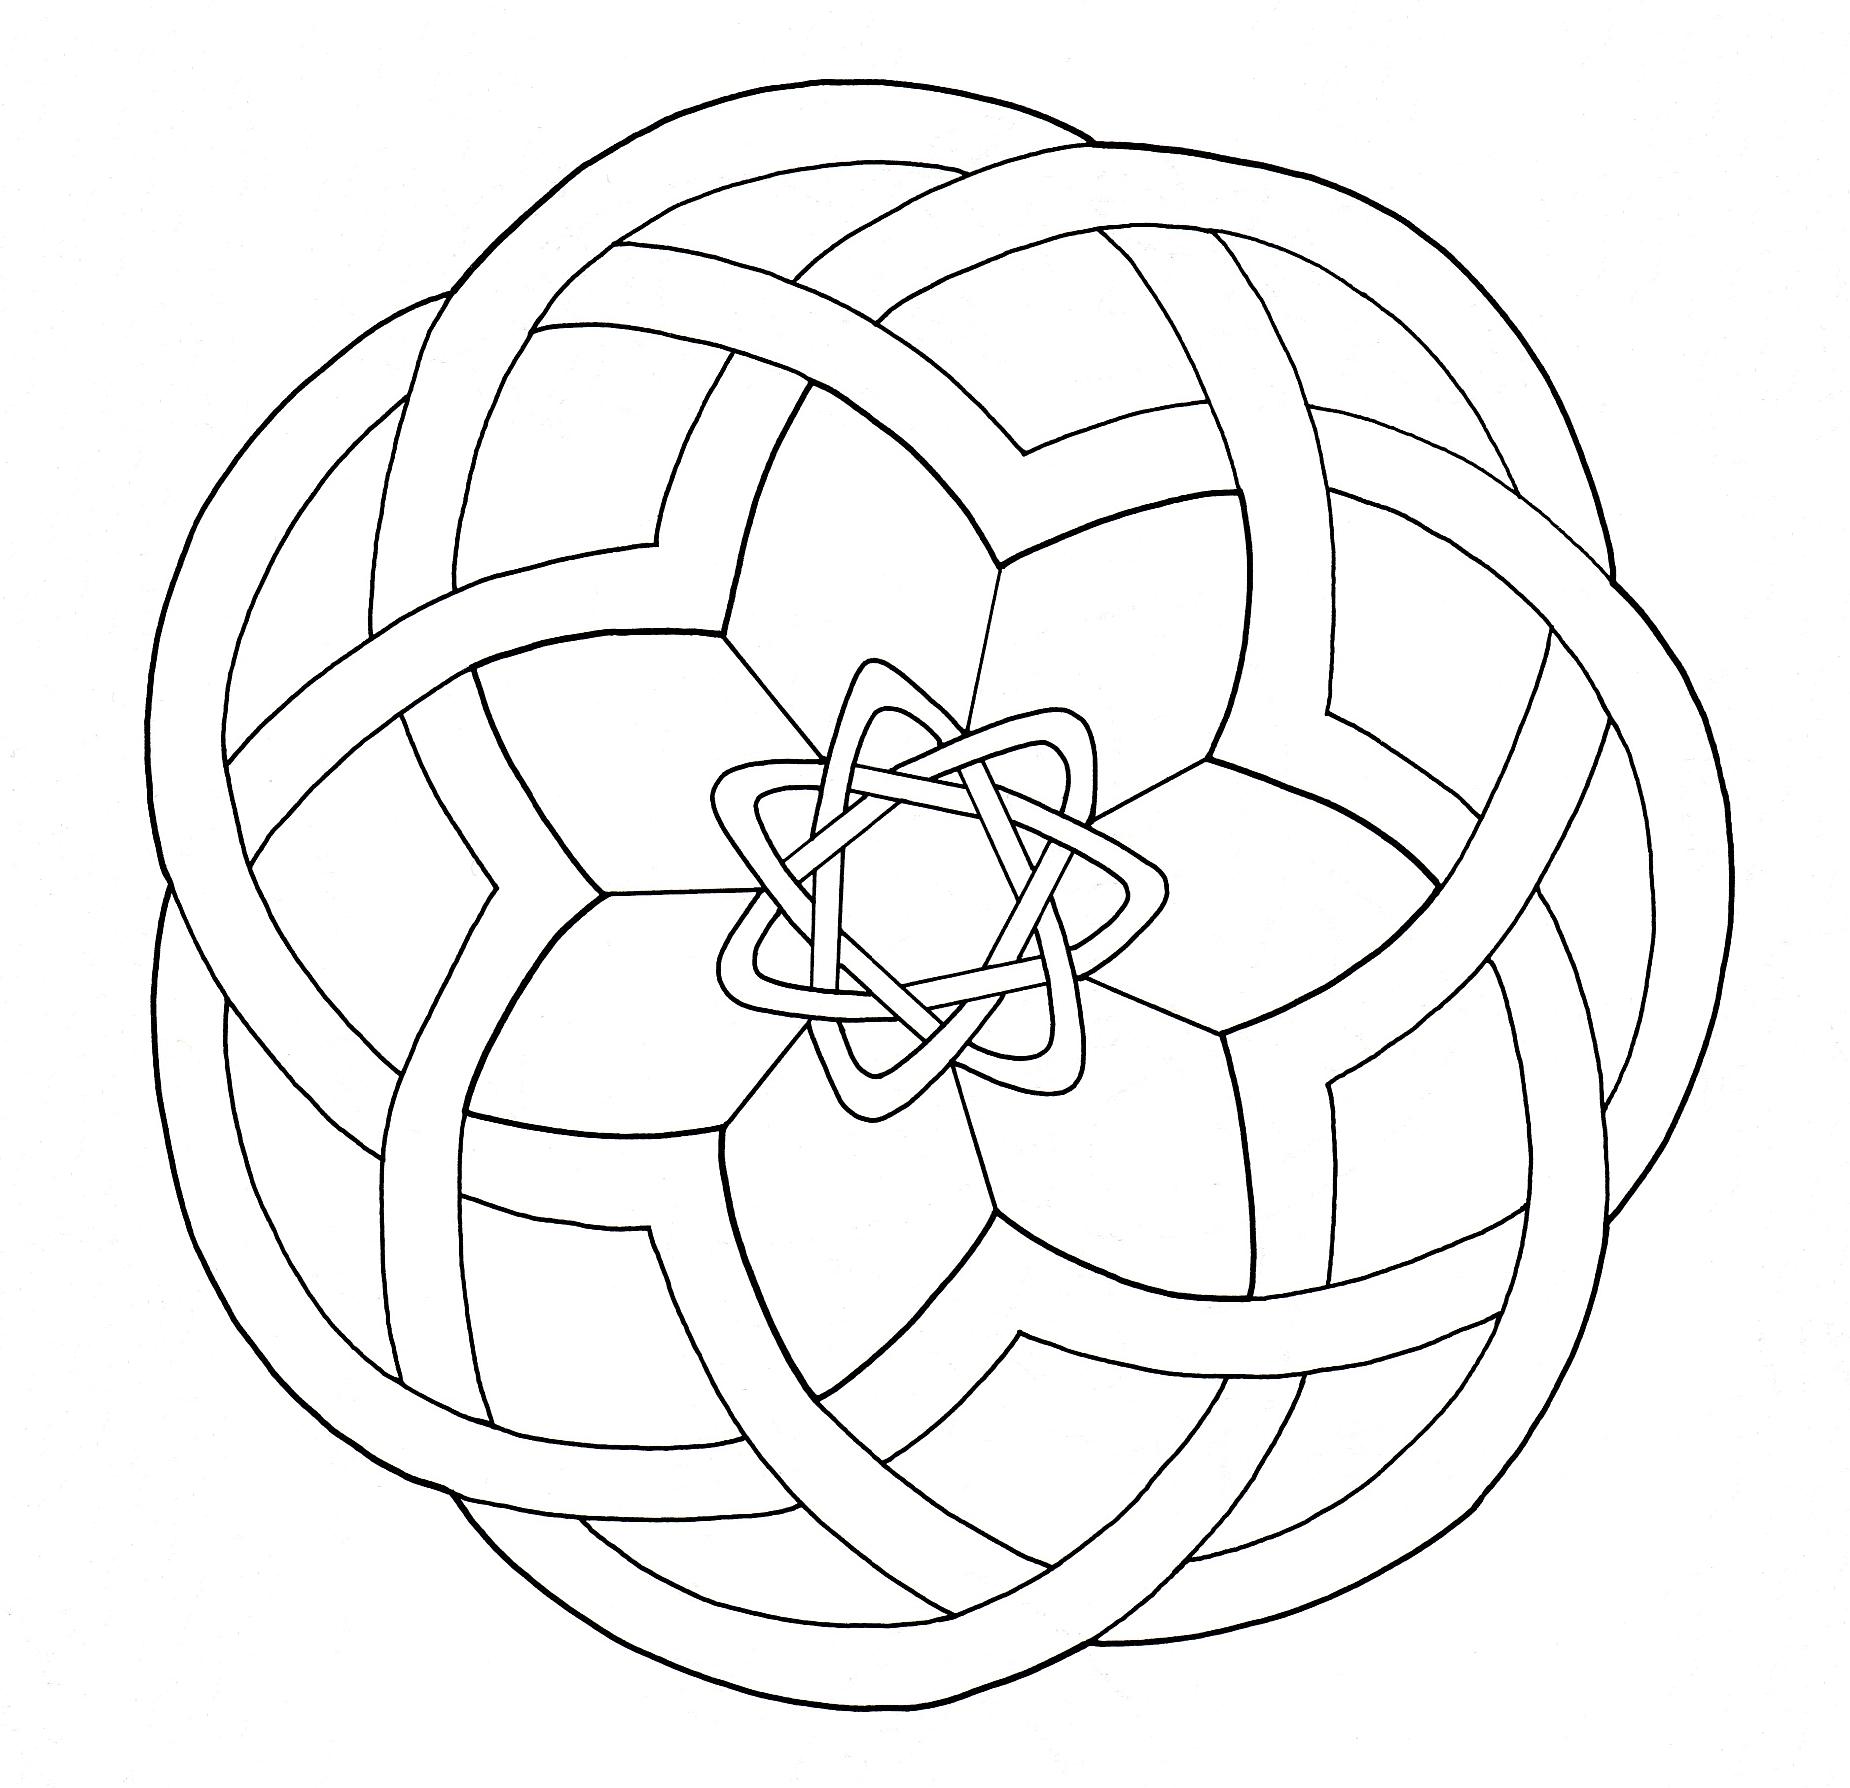 Si vous cherchez un Mandala pas trop compliqué à colorier, avec zones larges, mais avec quand même un niveau de difficulté relatif, celui-ci est parfait pour vous.